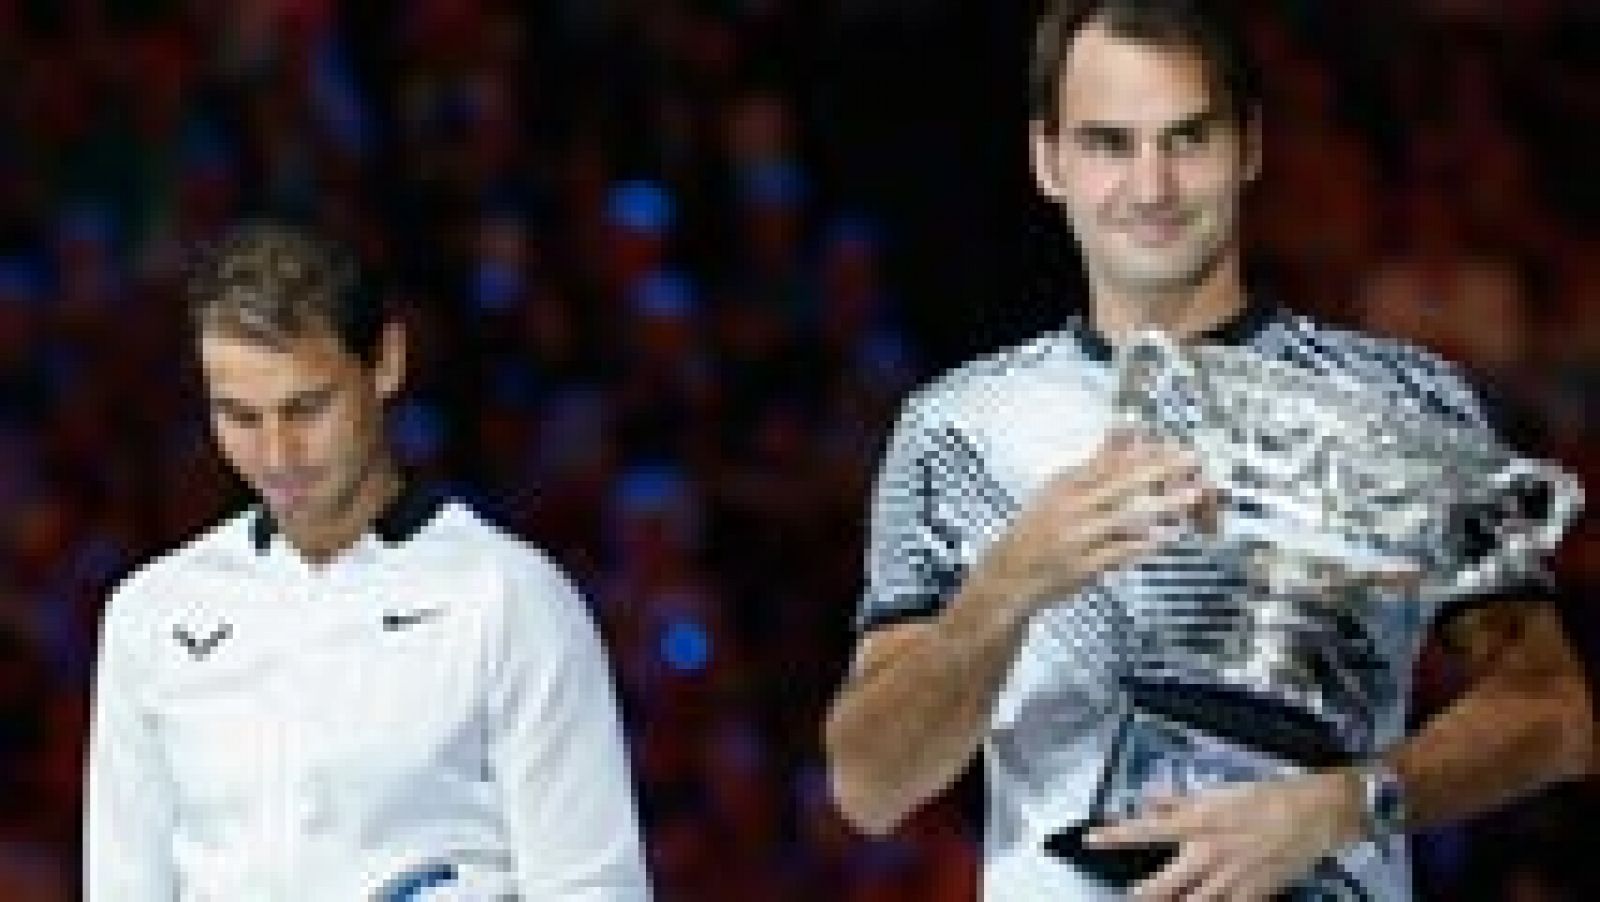 Rafa Nadal no ha podido con Roger Federer en la final del Open de Australia 2017, que se ha resuelto a favor del suizo por 6-4, 3-6, 6-1, 3-6 y 6-3 en un partido inolvidable que superó las enormes expectativas levantadas por dos de las leyendas del tenis mundial. Un duelo titánico que se fue a los cinco sets y que volvió a encumbrar al suizo como ganador de un Grand Slam, el primero que conquista desde 2012.